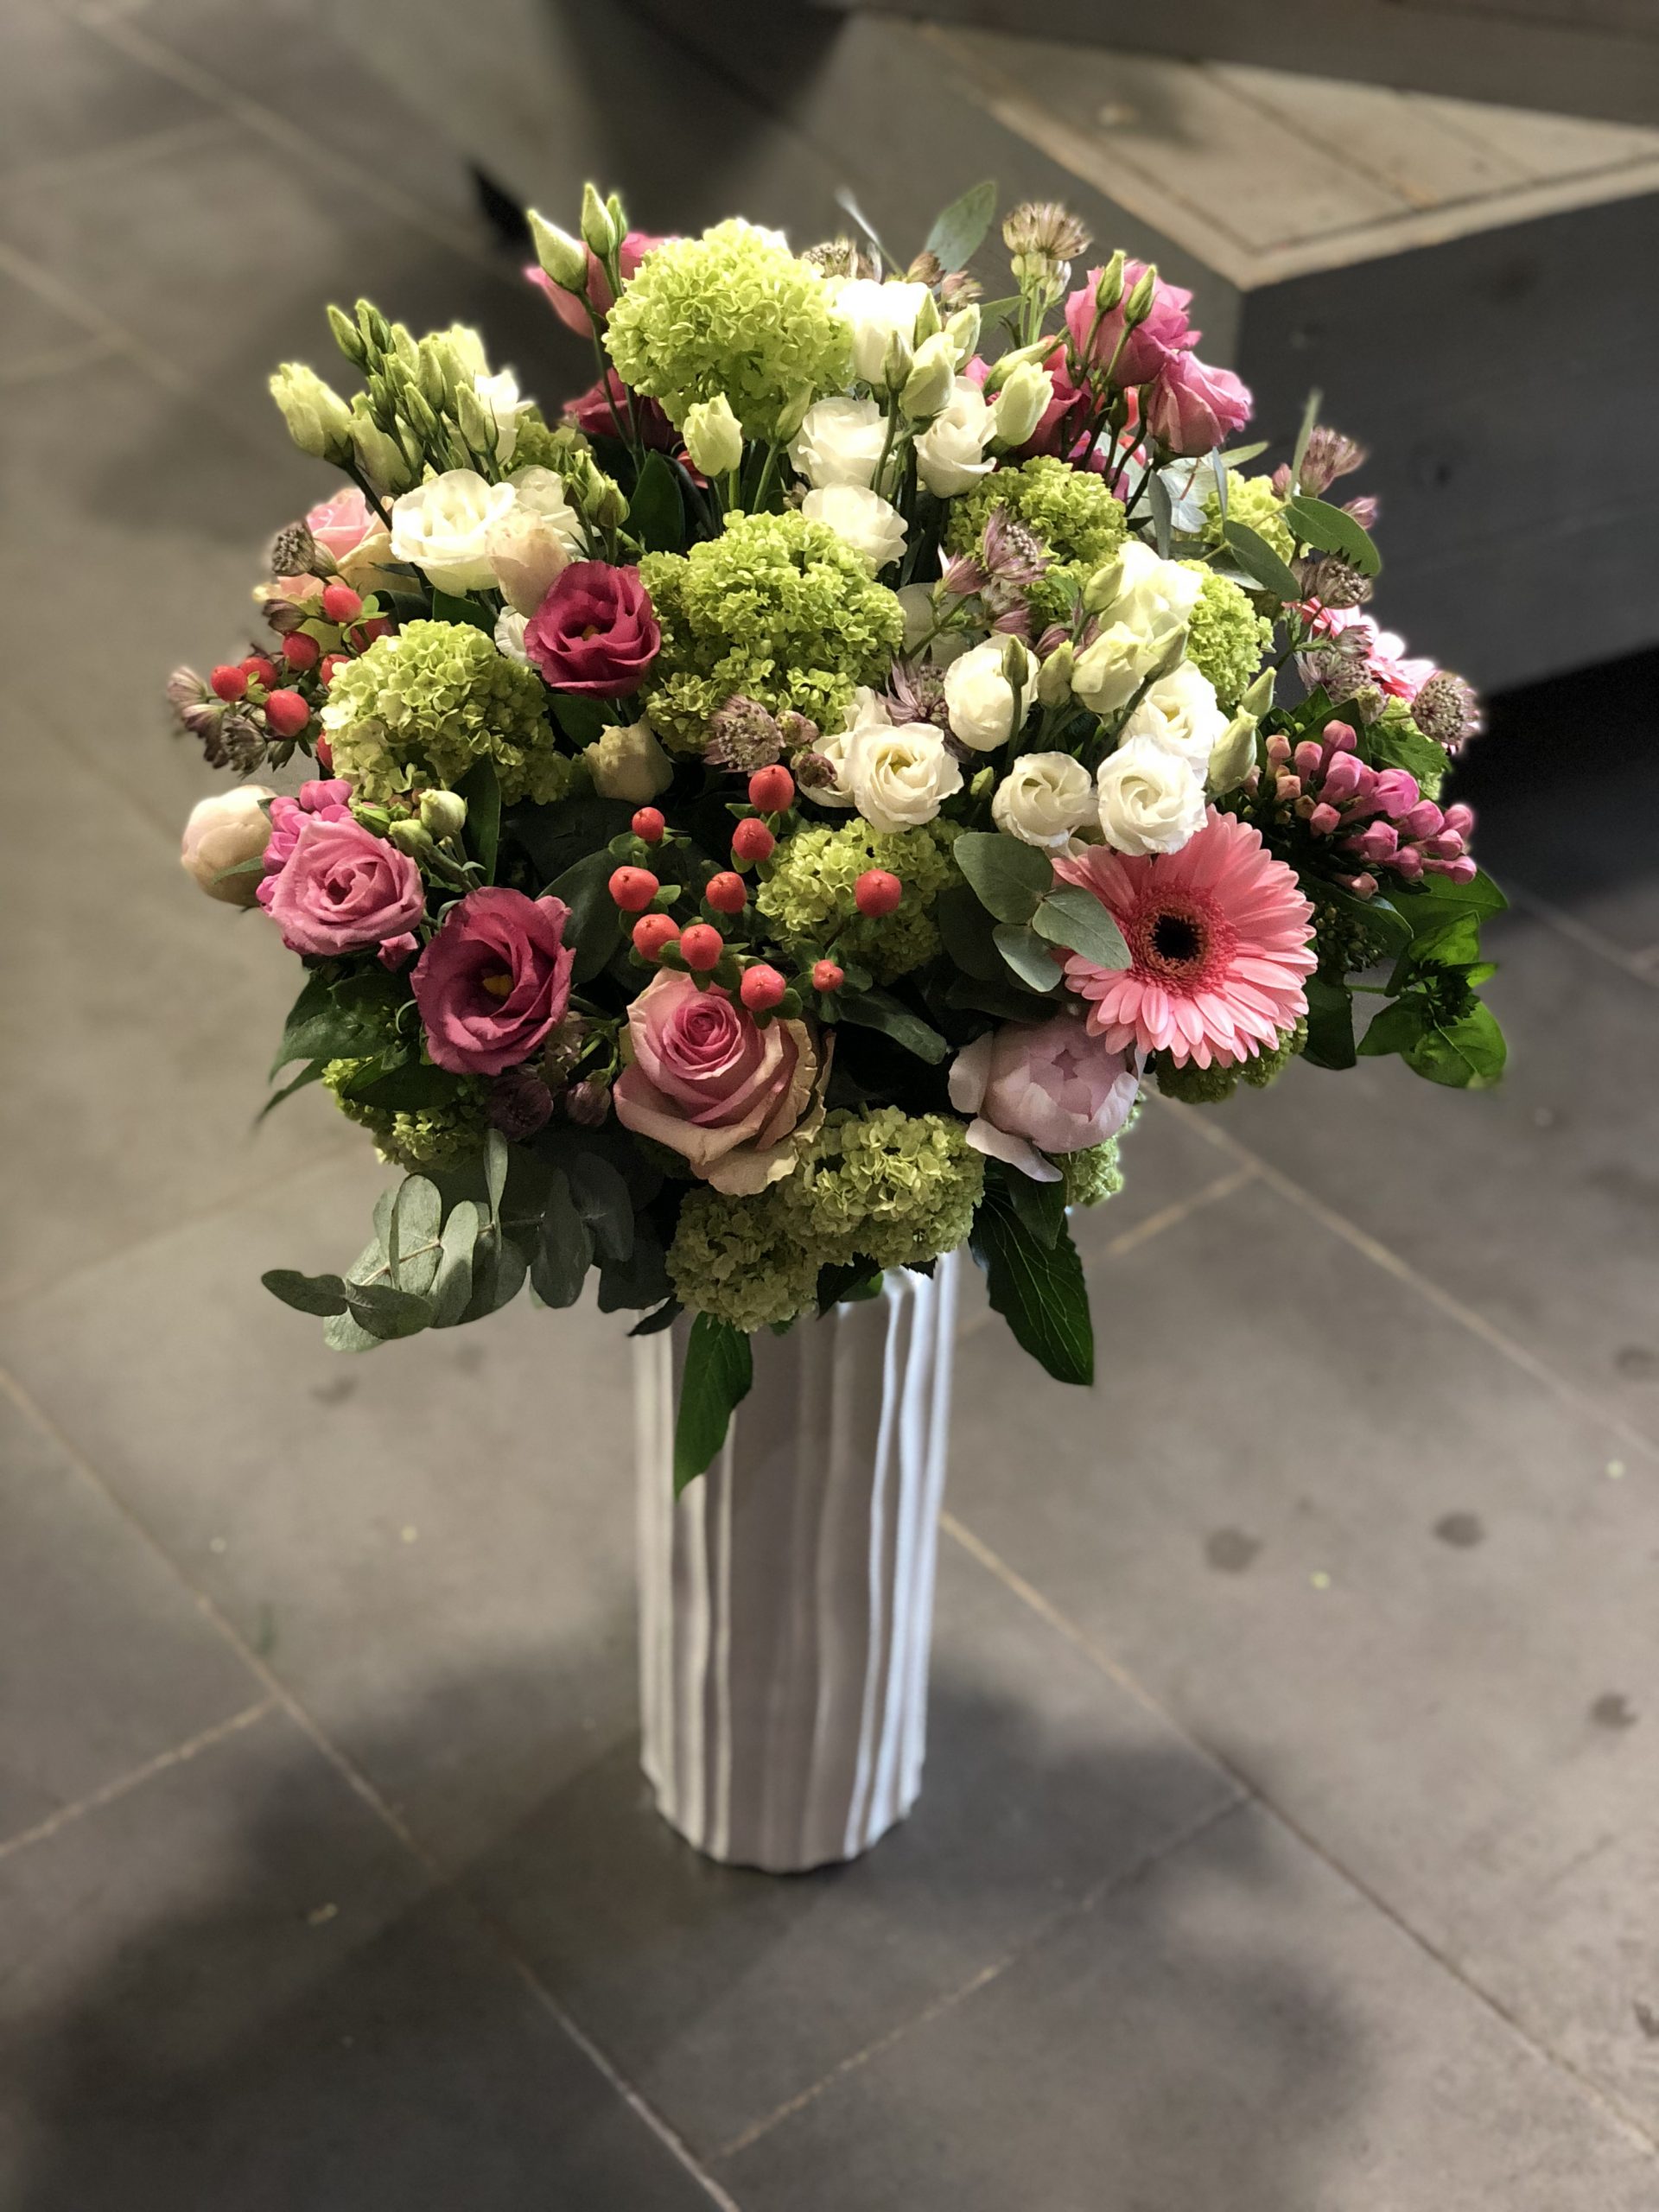 Le vase et son bouquet de fleurs fraîches